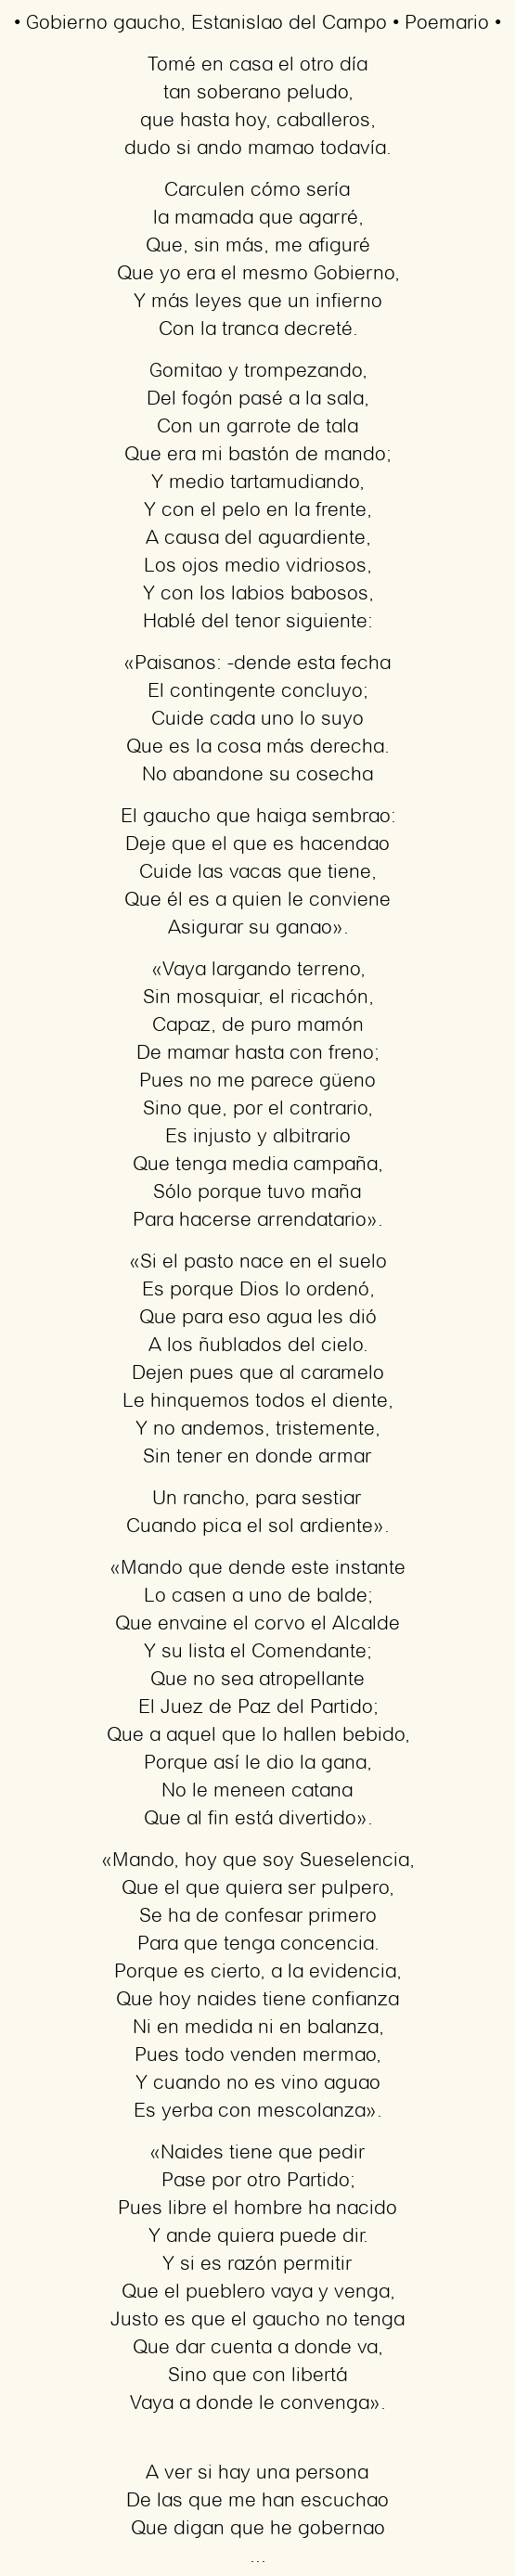 Imagen con el poema Gobierno gaucho, por Estanislao del Campo